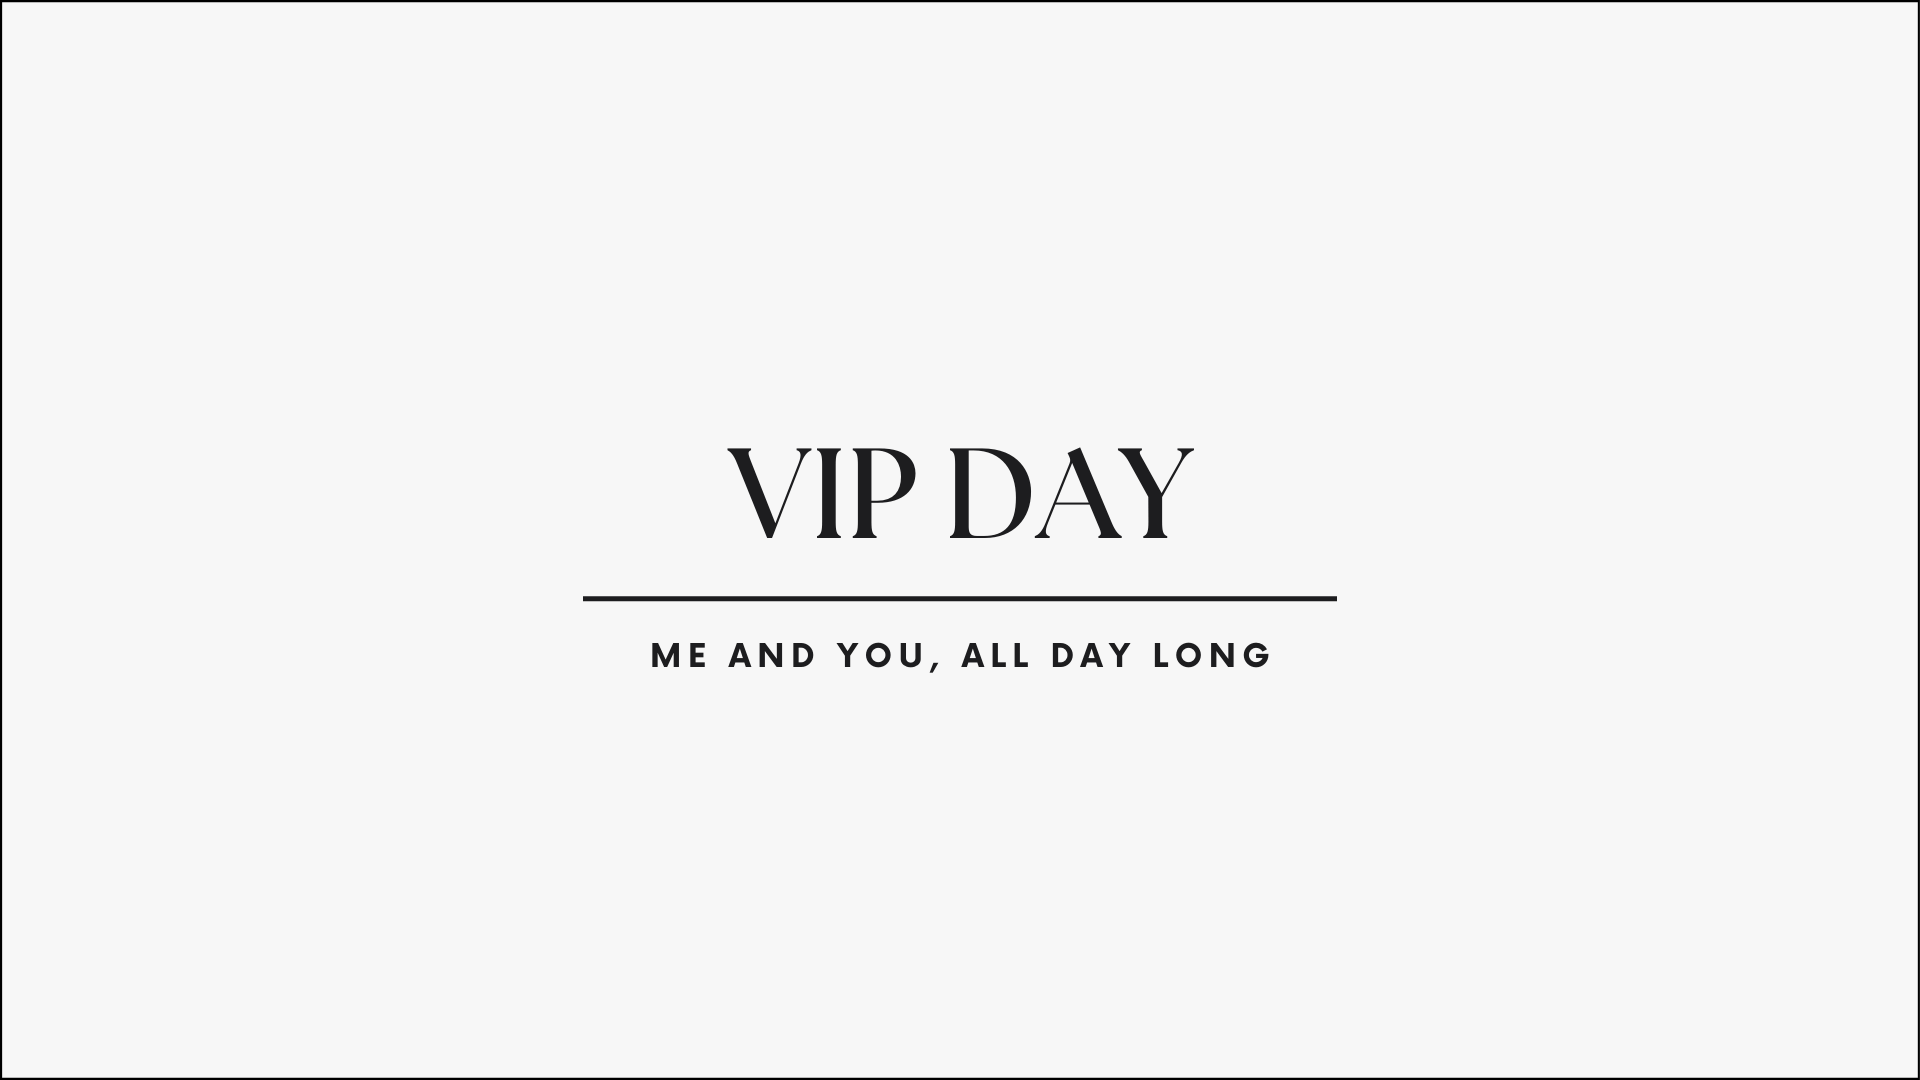 VIP DAY